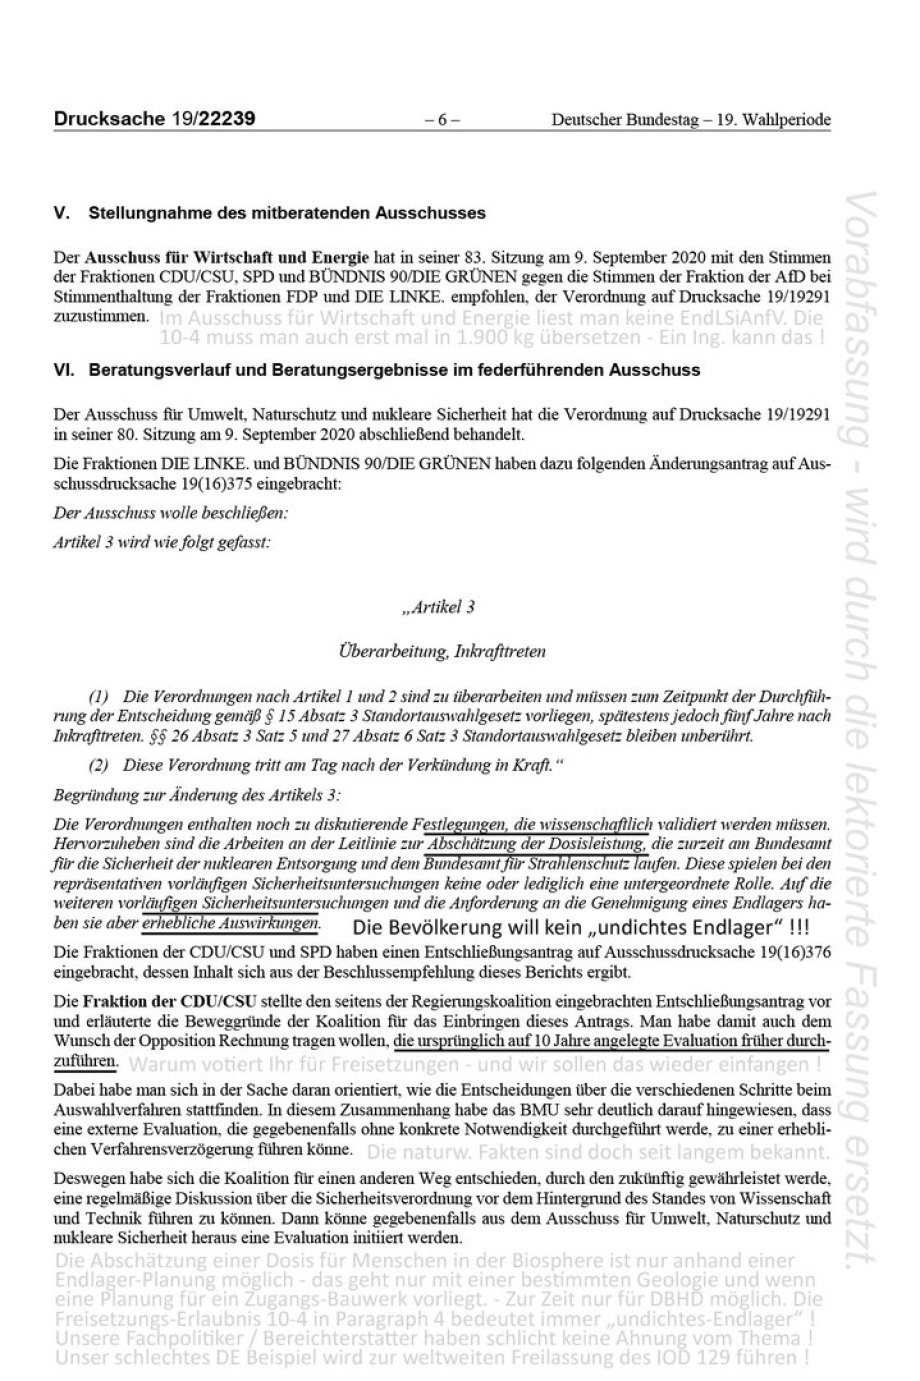 >>> Die Berichterstatter im Umwelt-Ausschuss belügen MdB Kollegen - #BerichtErstatter #UmweltAusschuss #Bundestag #EndlagerSicherheitsAnforderungsVerordnung #Freisetzungen